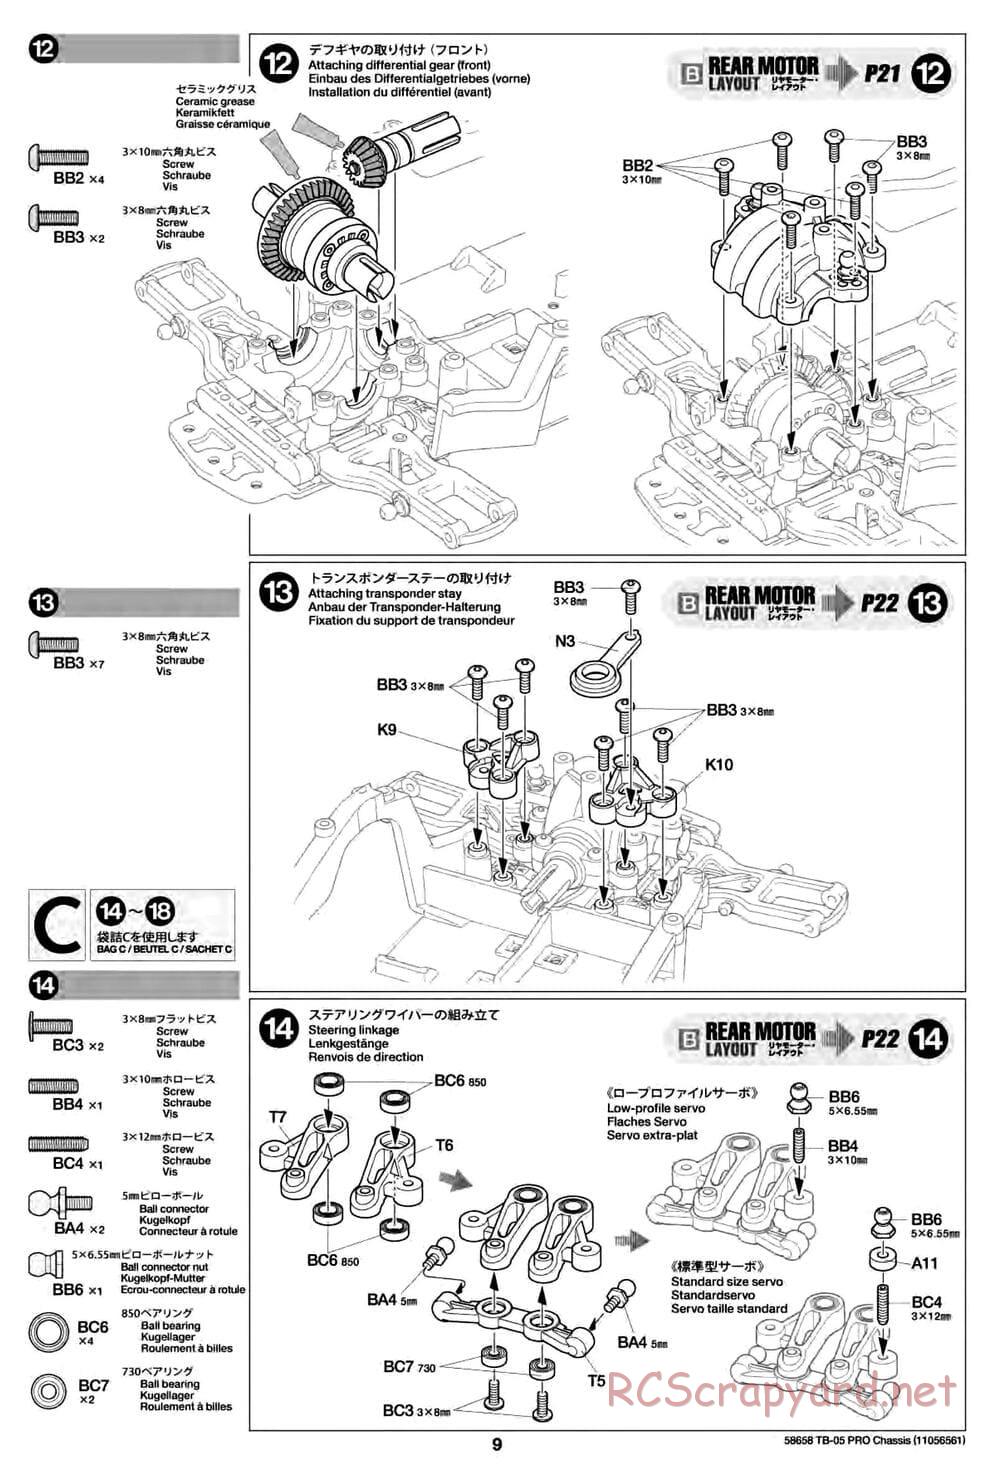 Tamiya - TB-05 Pro Chassis - Manual - Page 9